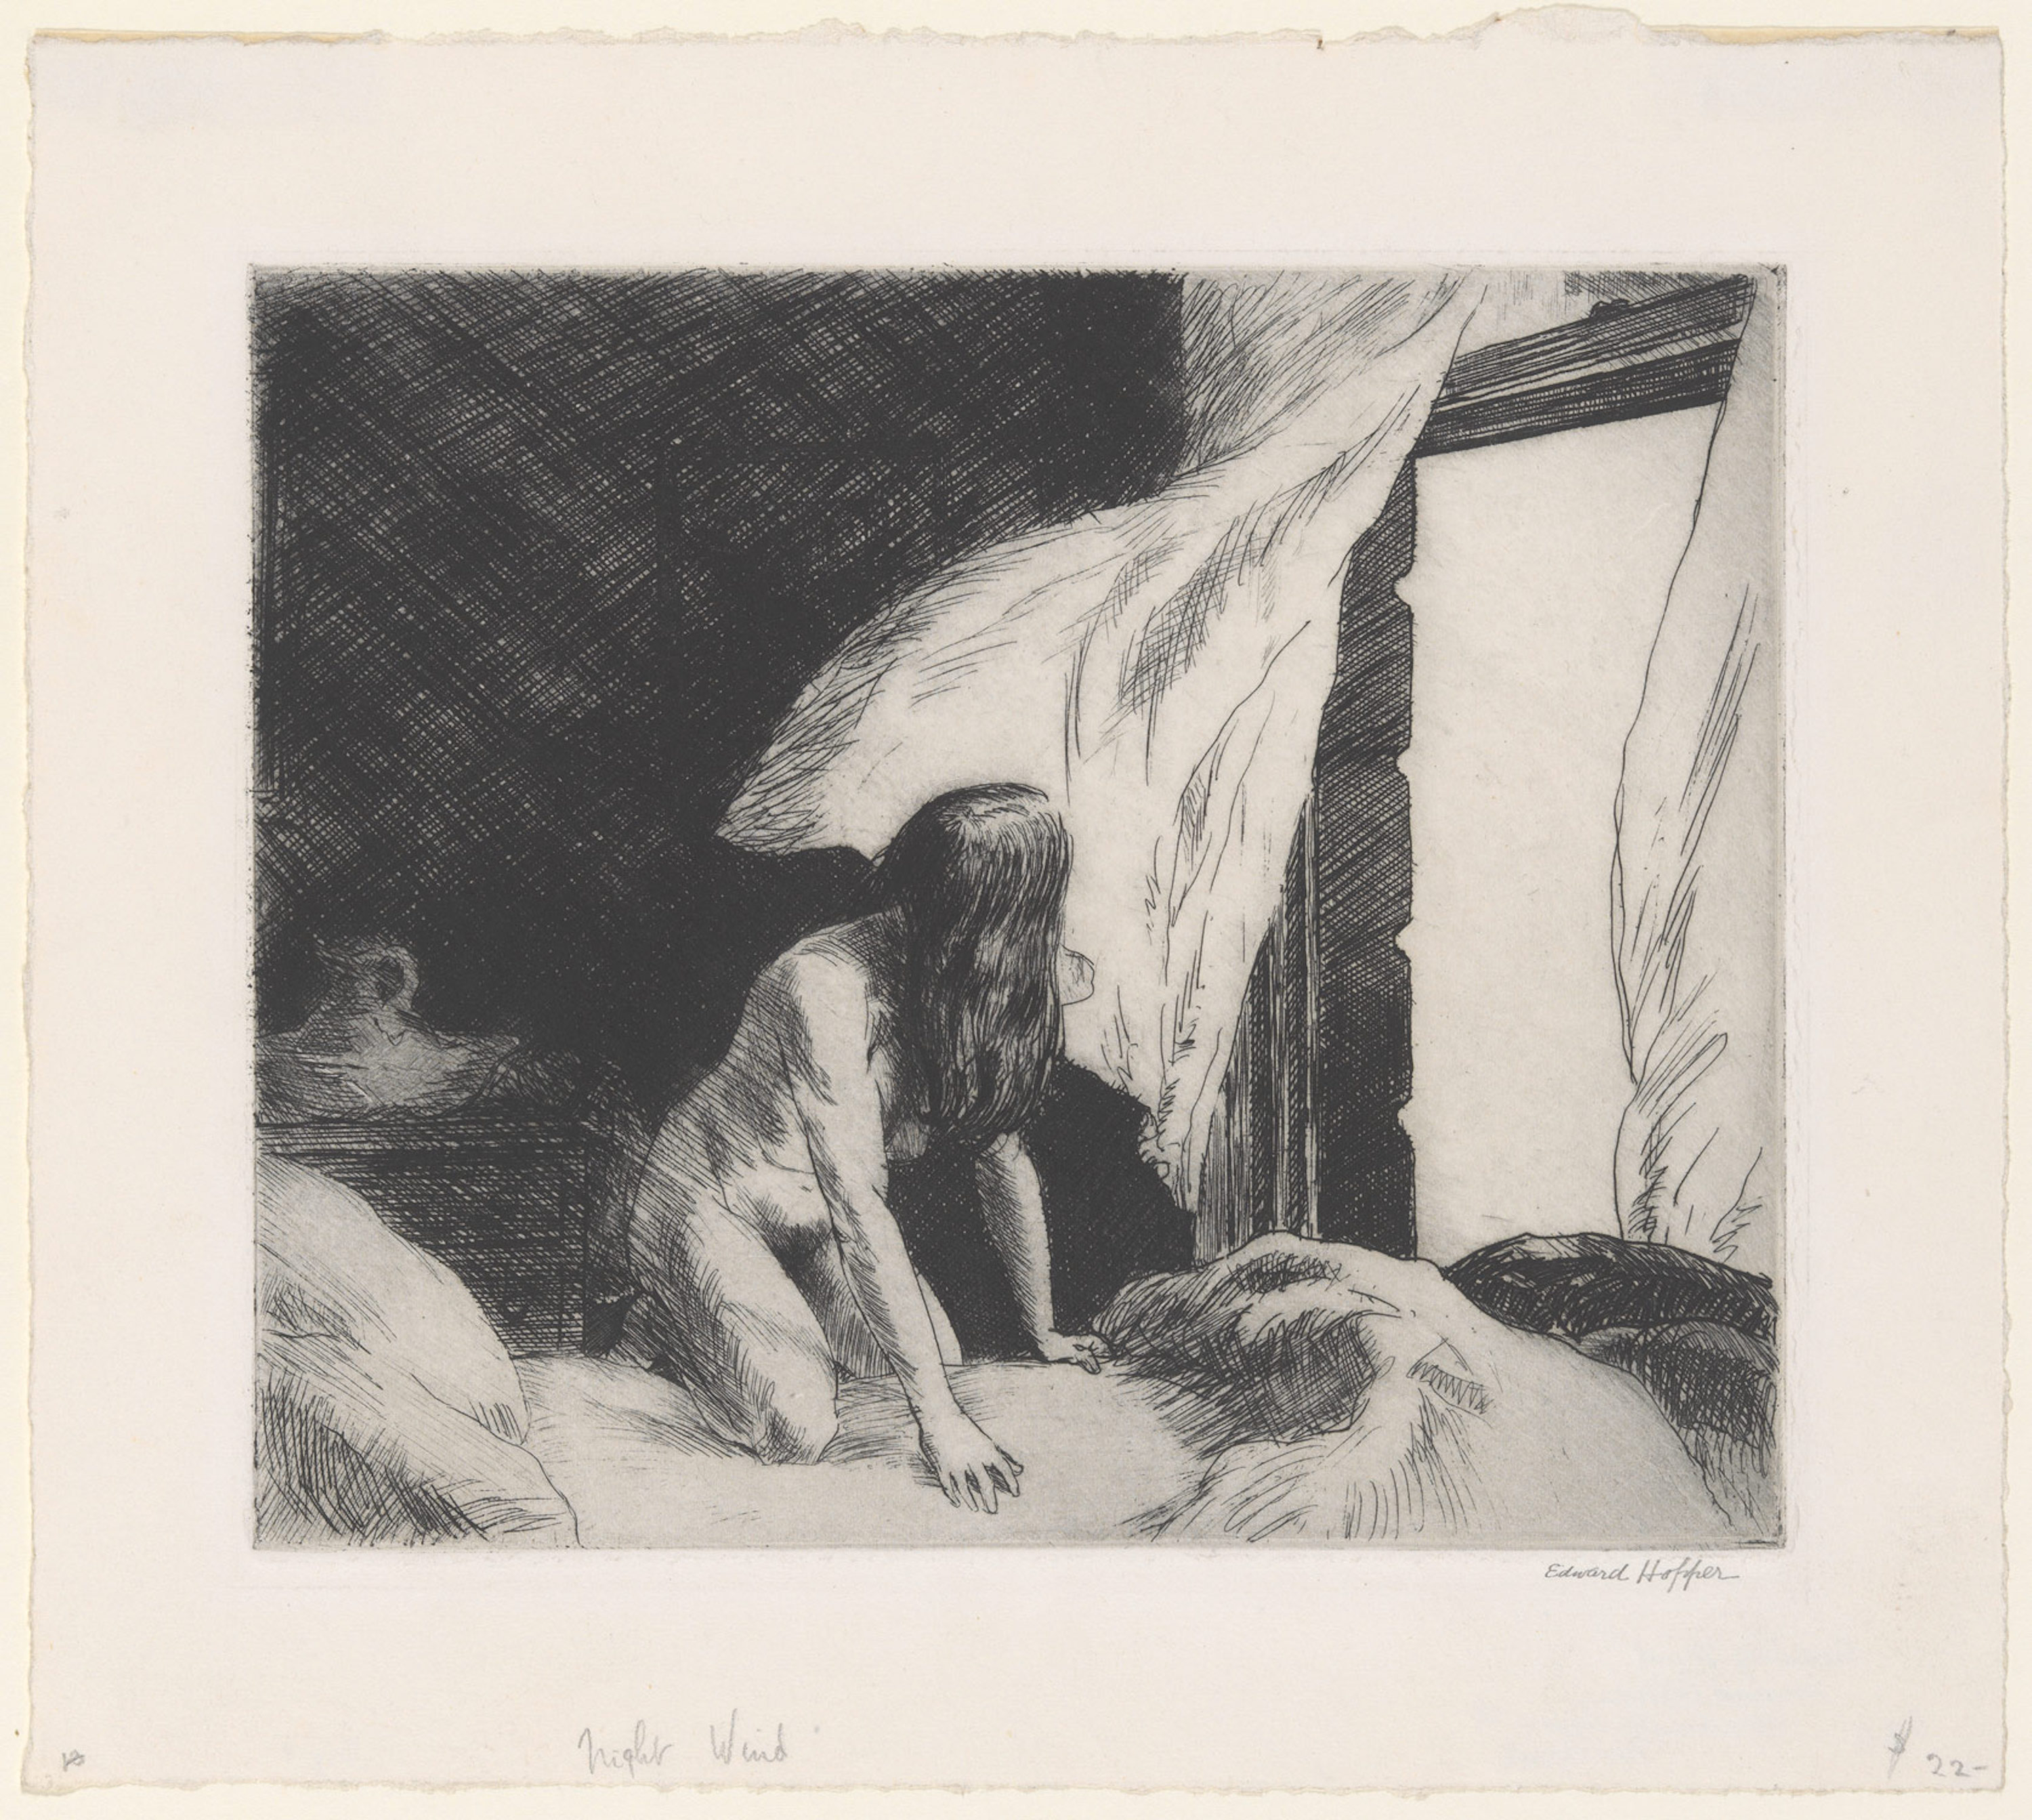 저녁 바람 by Edward Hopper - 1921 - 17.6 x 21 cm 